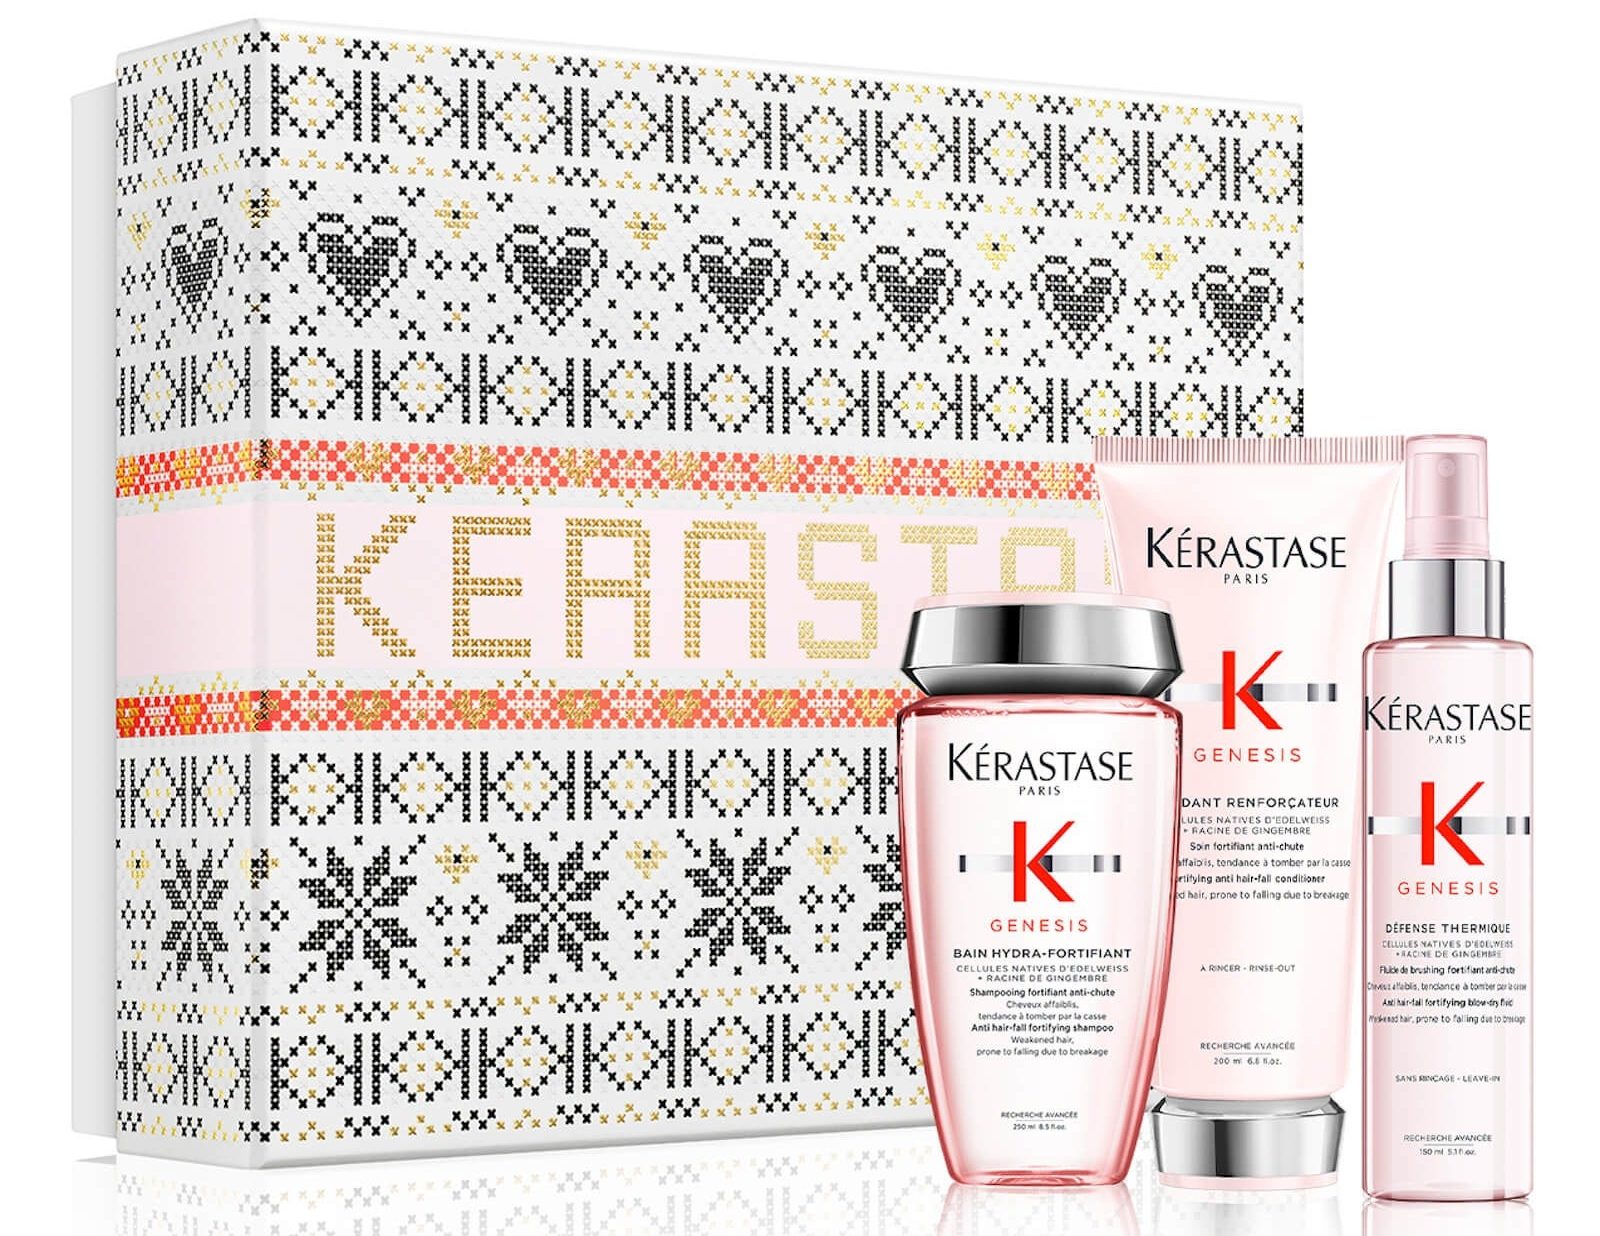 Kérastase Genesis Anti-Fall Gift Set for Weakened Hair